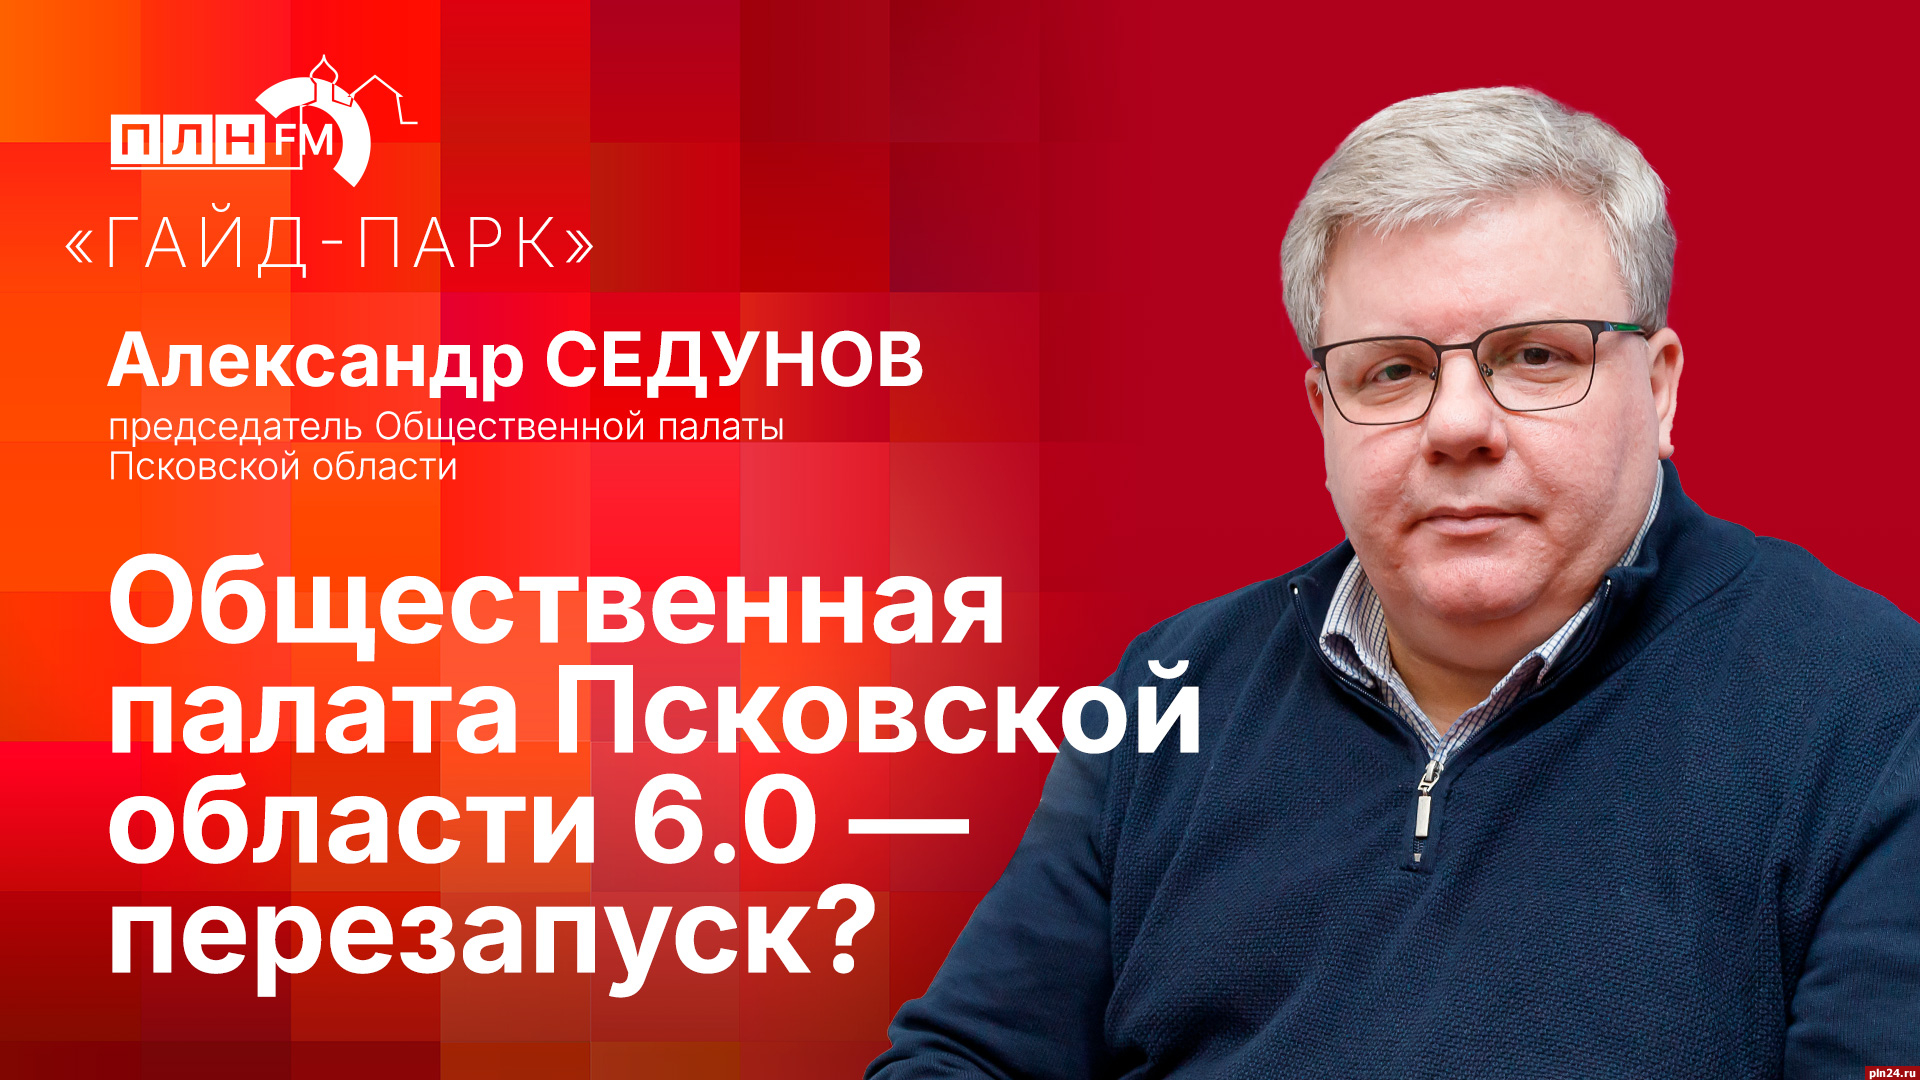 Начинается видеотрансляция программы «Гайд-парк»: Общественная палата Псковской области 6.0 — перезапуск?